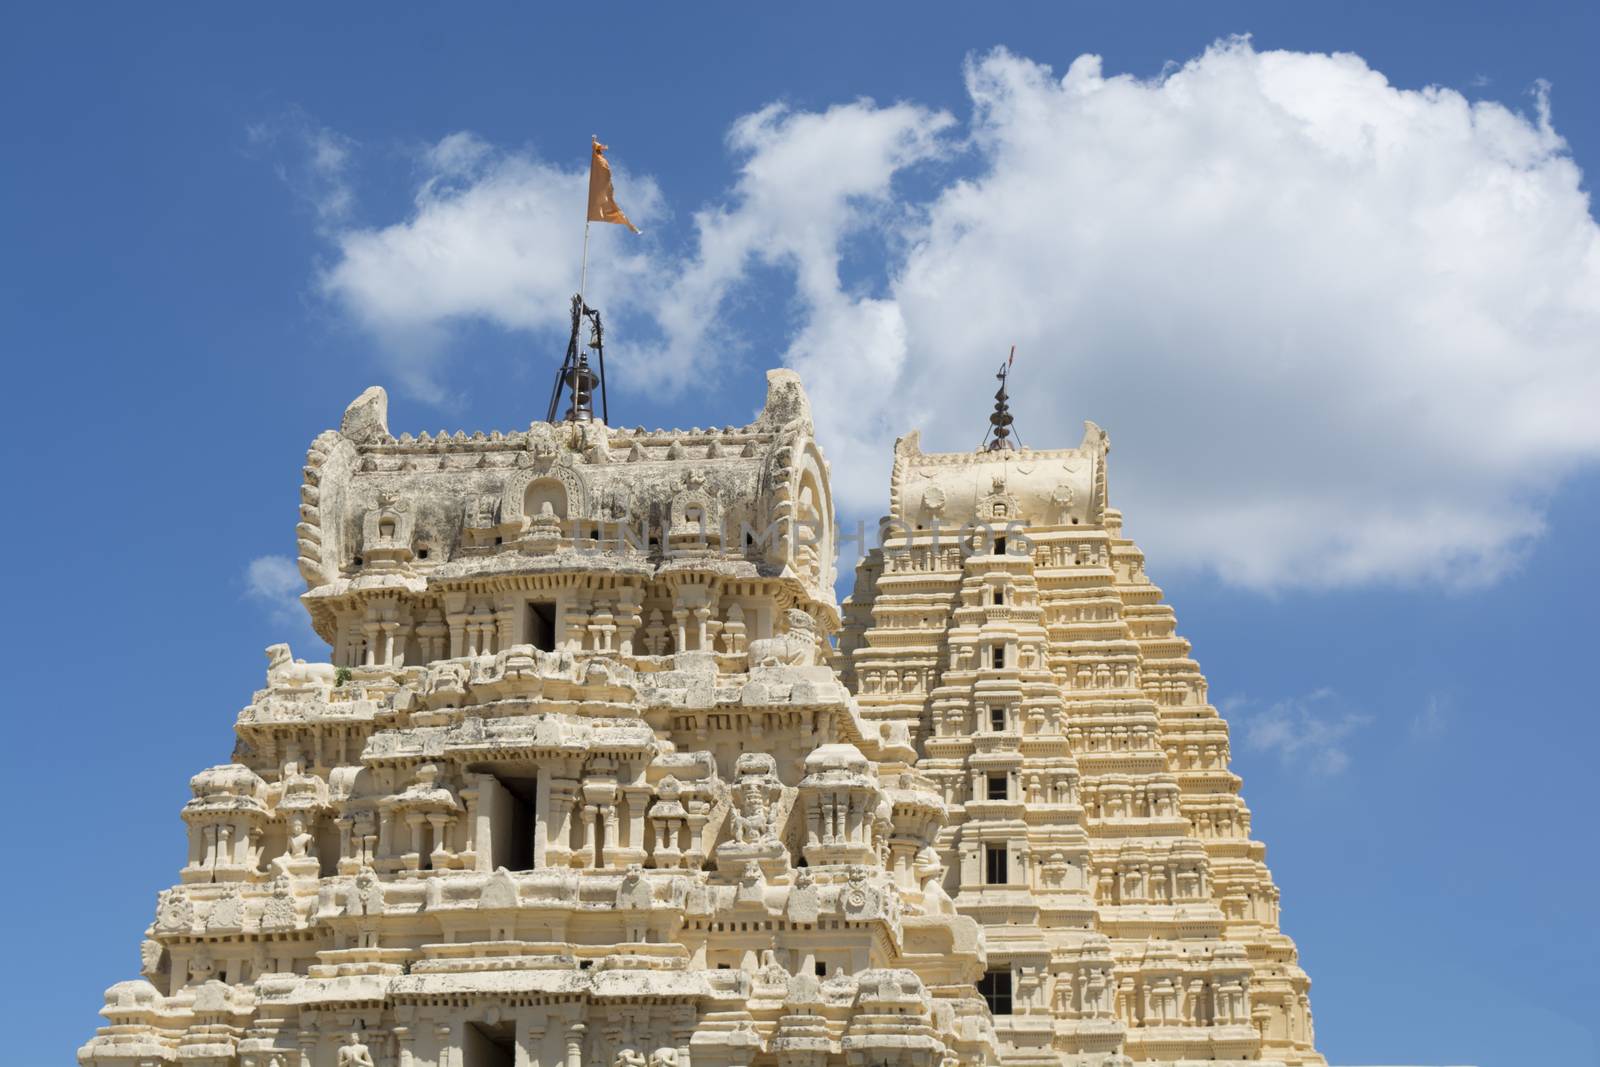 Temple towers of Virupaksha temple at Hampi, India by lakshmiprasad.maski@gmai.com